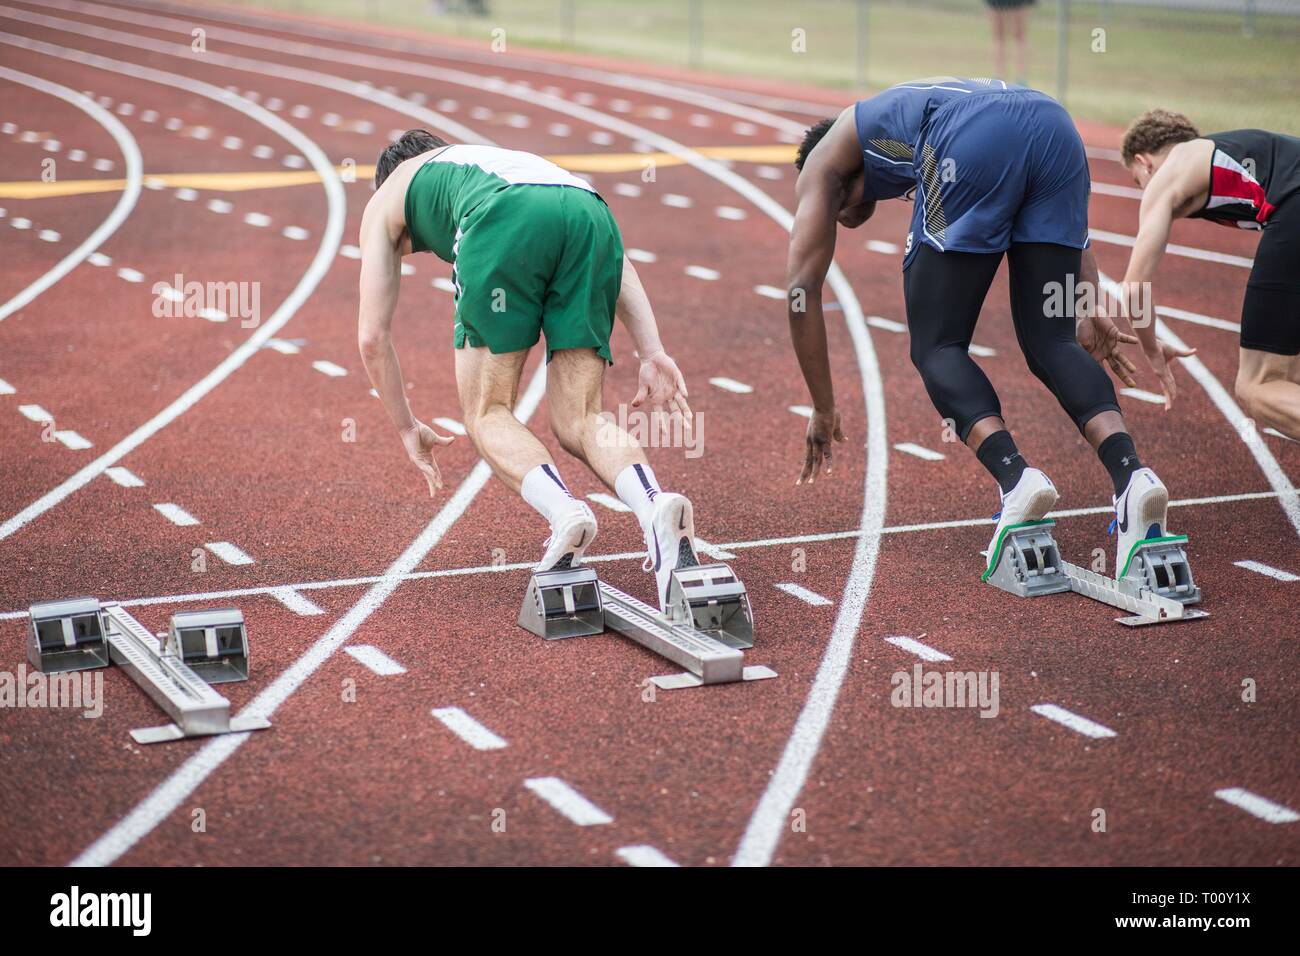 Les élèves du secondaire participent à un track and field 100 mètres race Banque D'Images